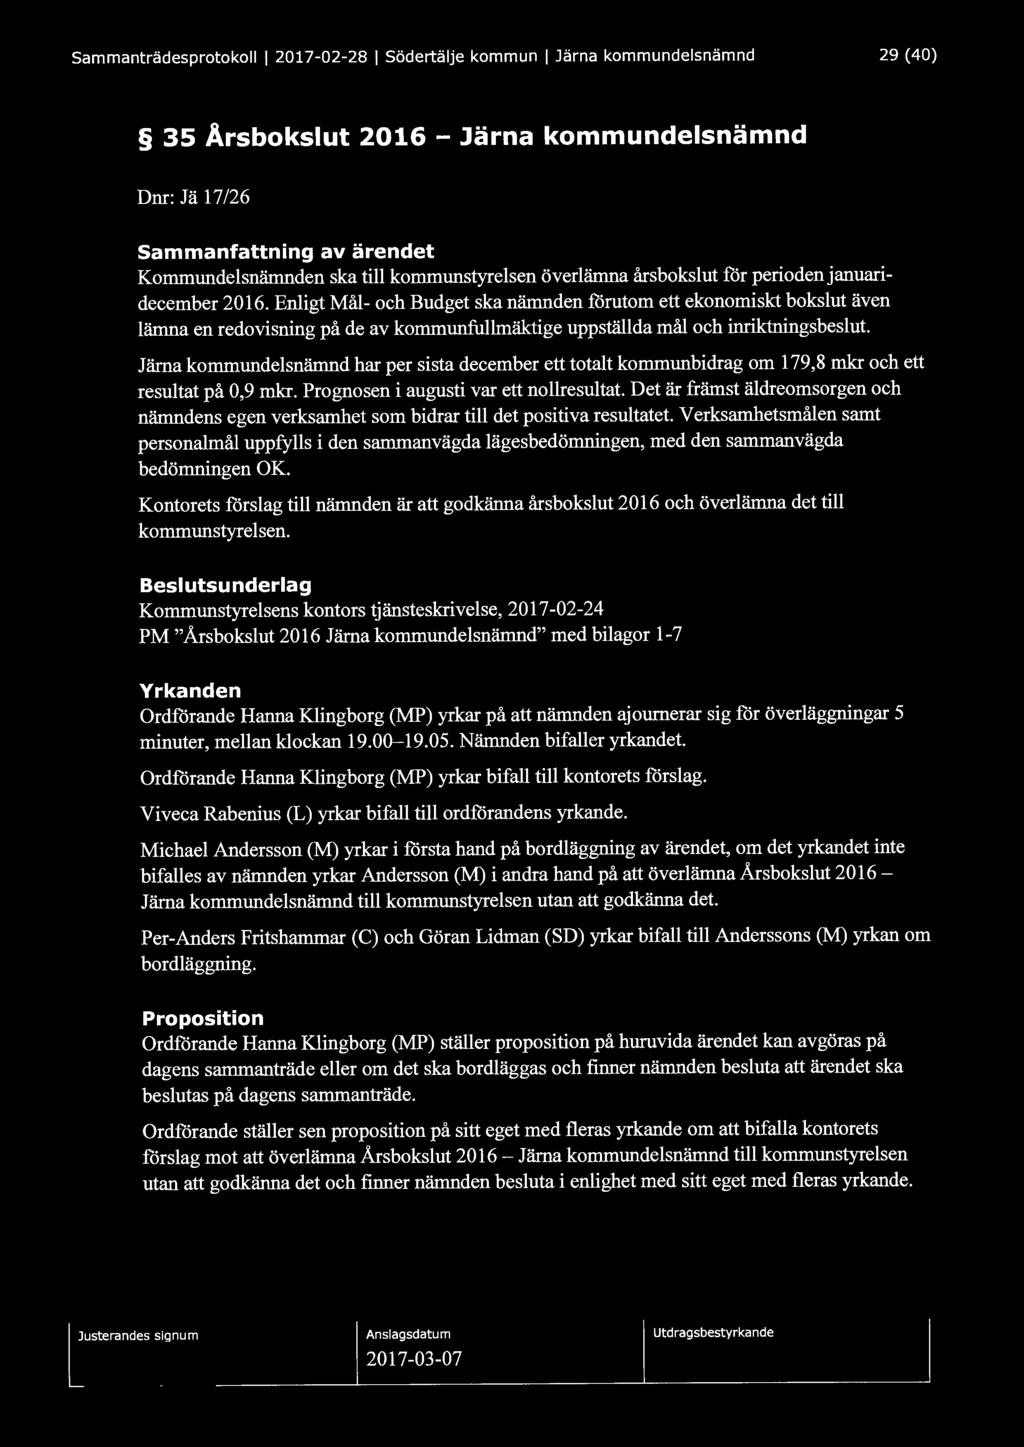 Sammanträdesprotokoll l 2017-02-28 l Södertälje kommun l Järna kommundelsnämnd 29 (40) 35 Arsbokslut 2016 - Järna kommundelsnämnd Dnr: J ä 17/26 Sammanfattning av ärendet Kommundelsnämnden ska till